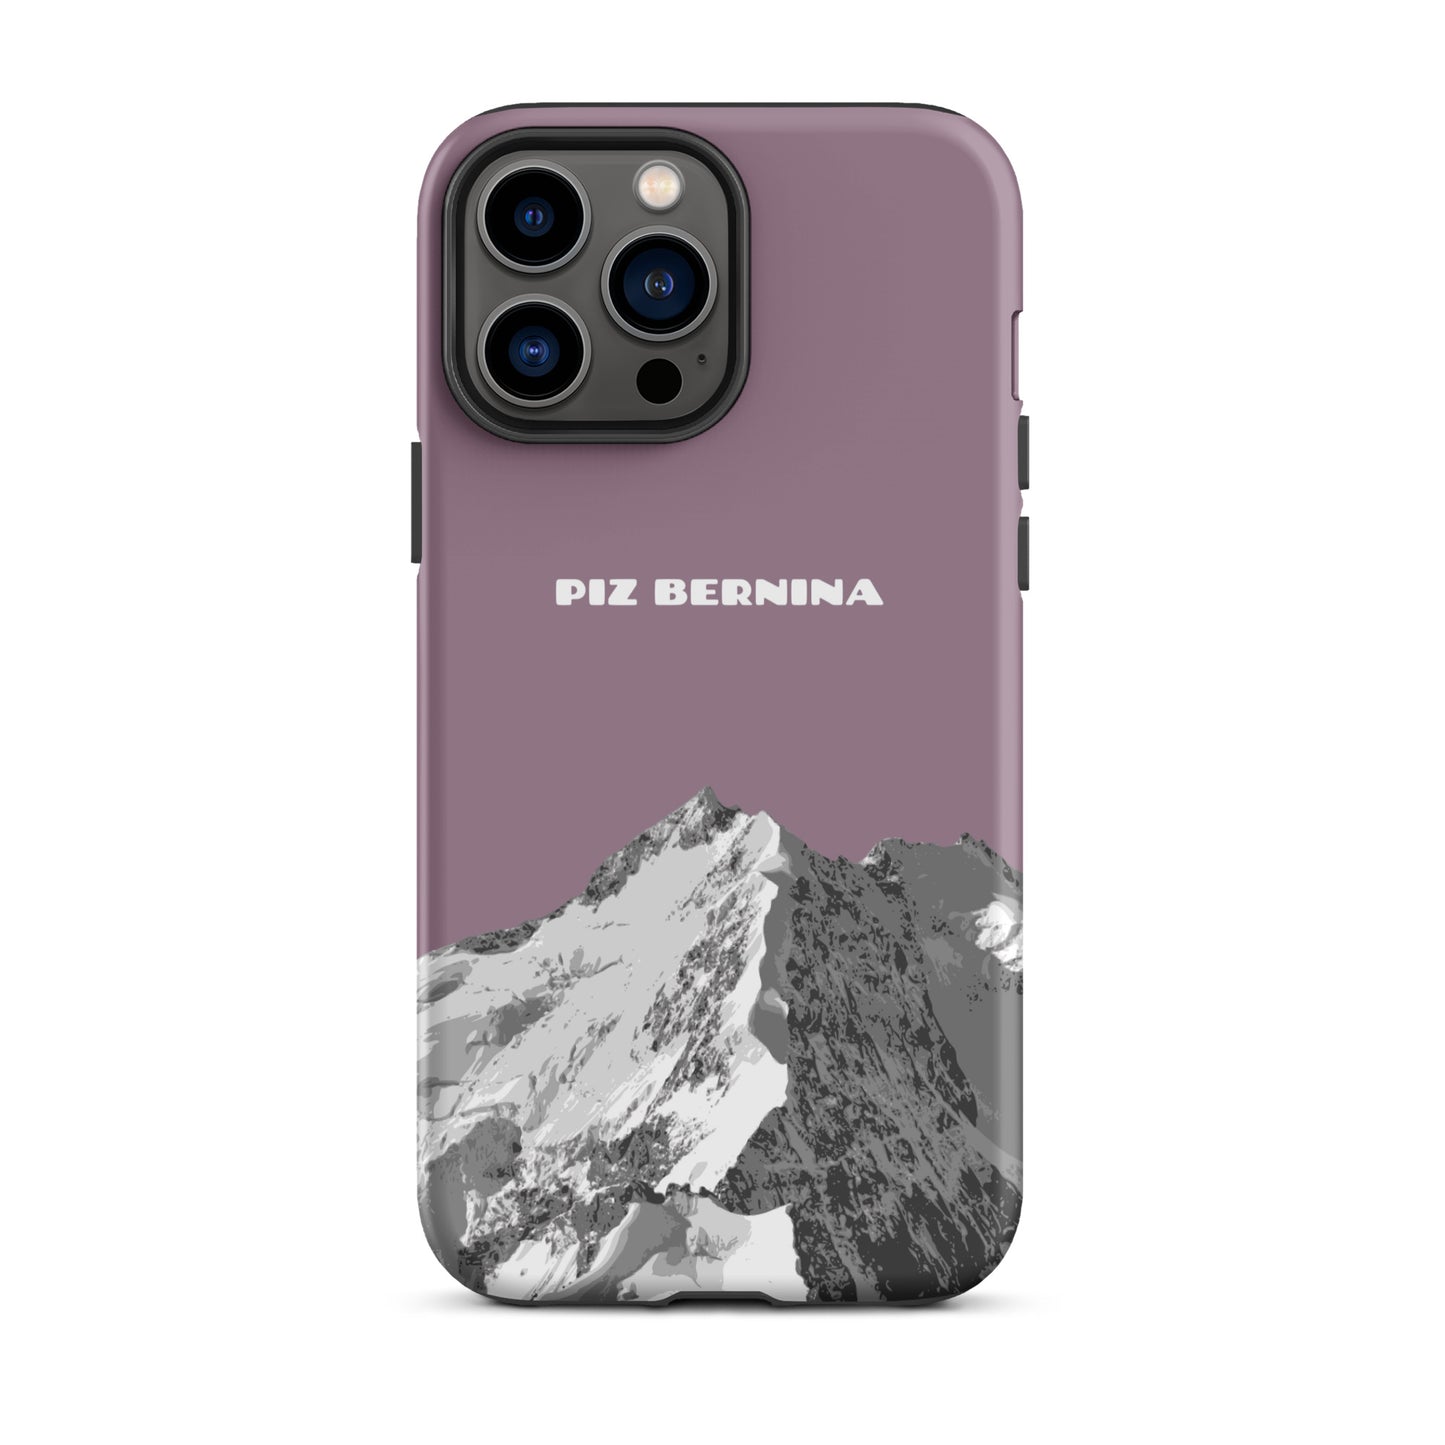 Hülle für das iPhone 13 Pro Max von Apple in der Farbe Pastellviolett, dass den Piz Bernina in Graubünden zeigt.